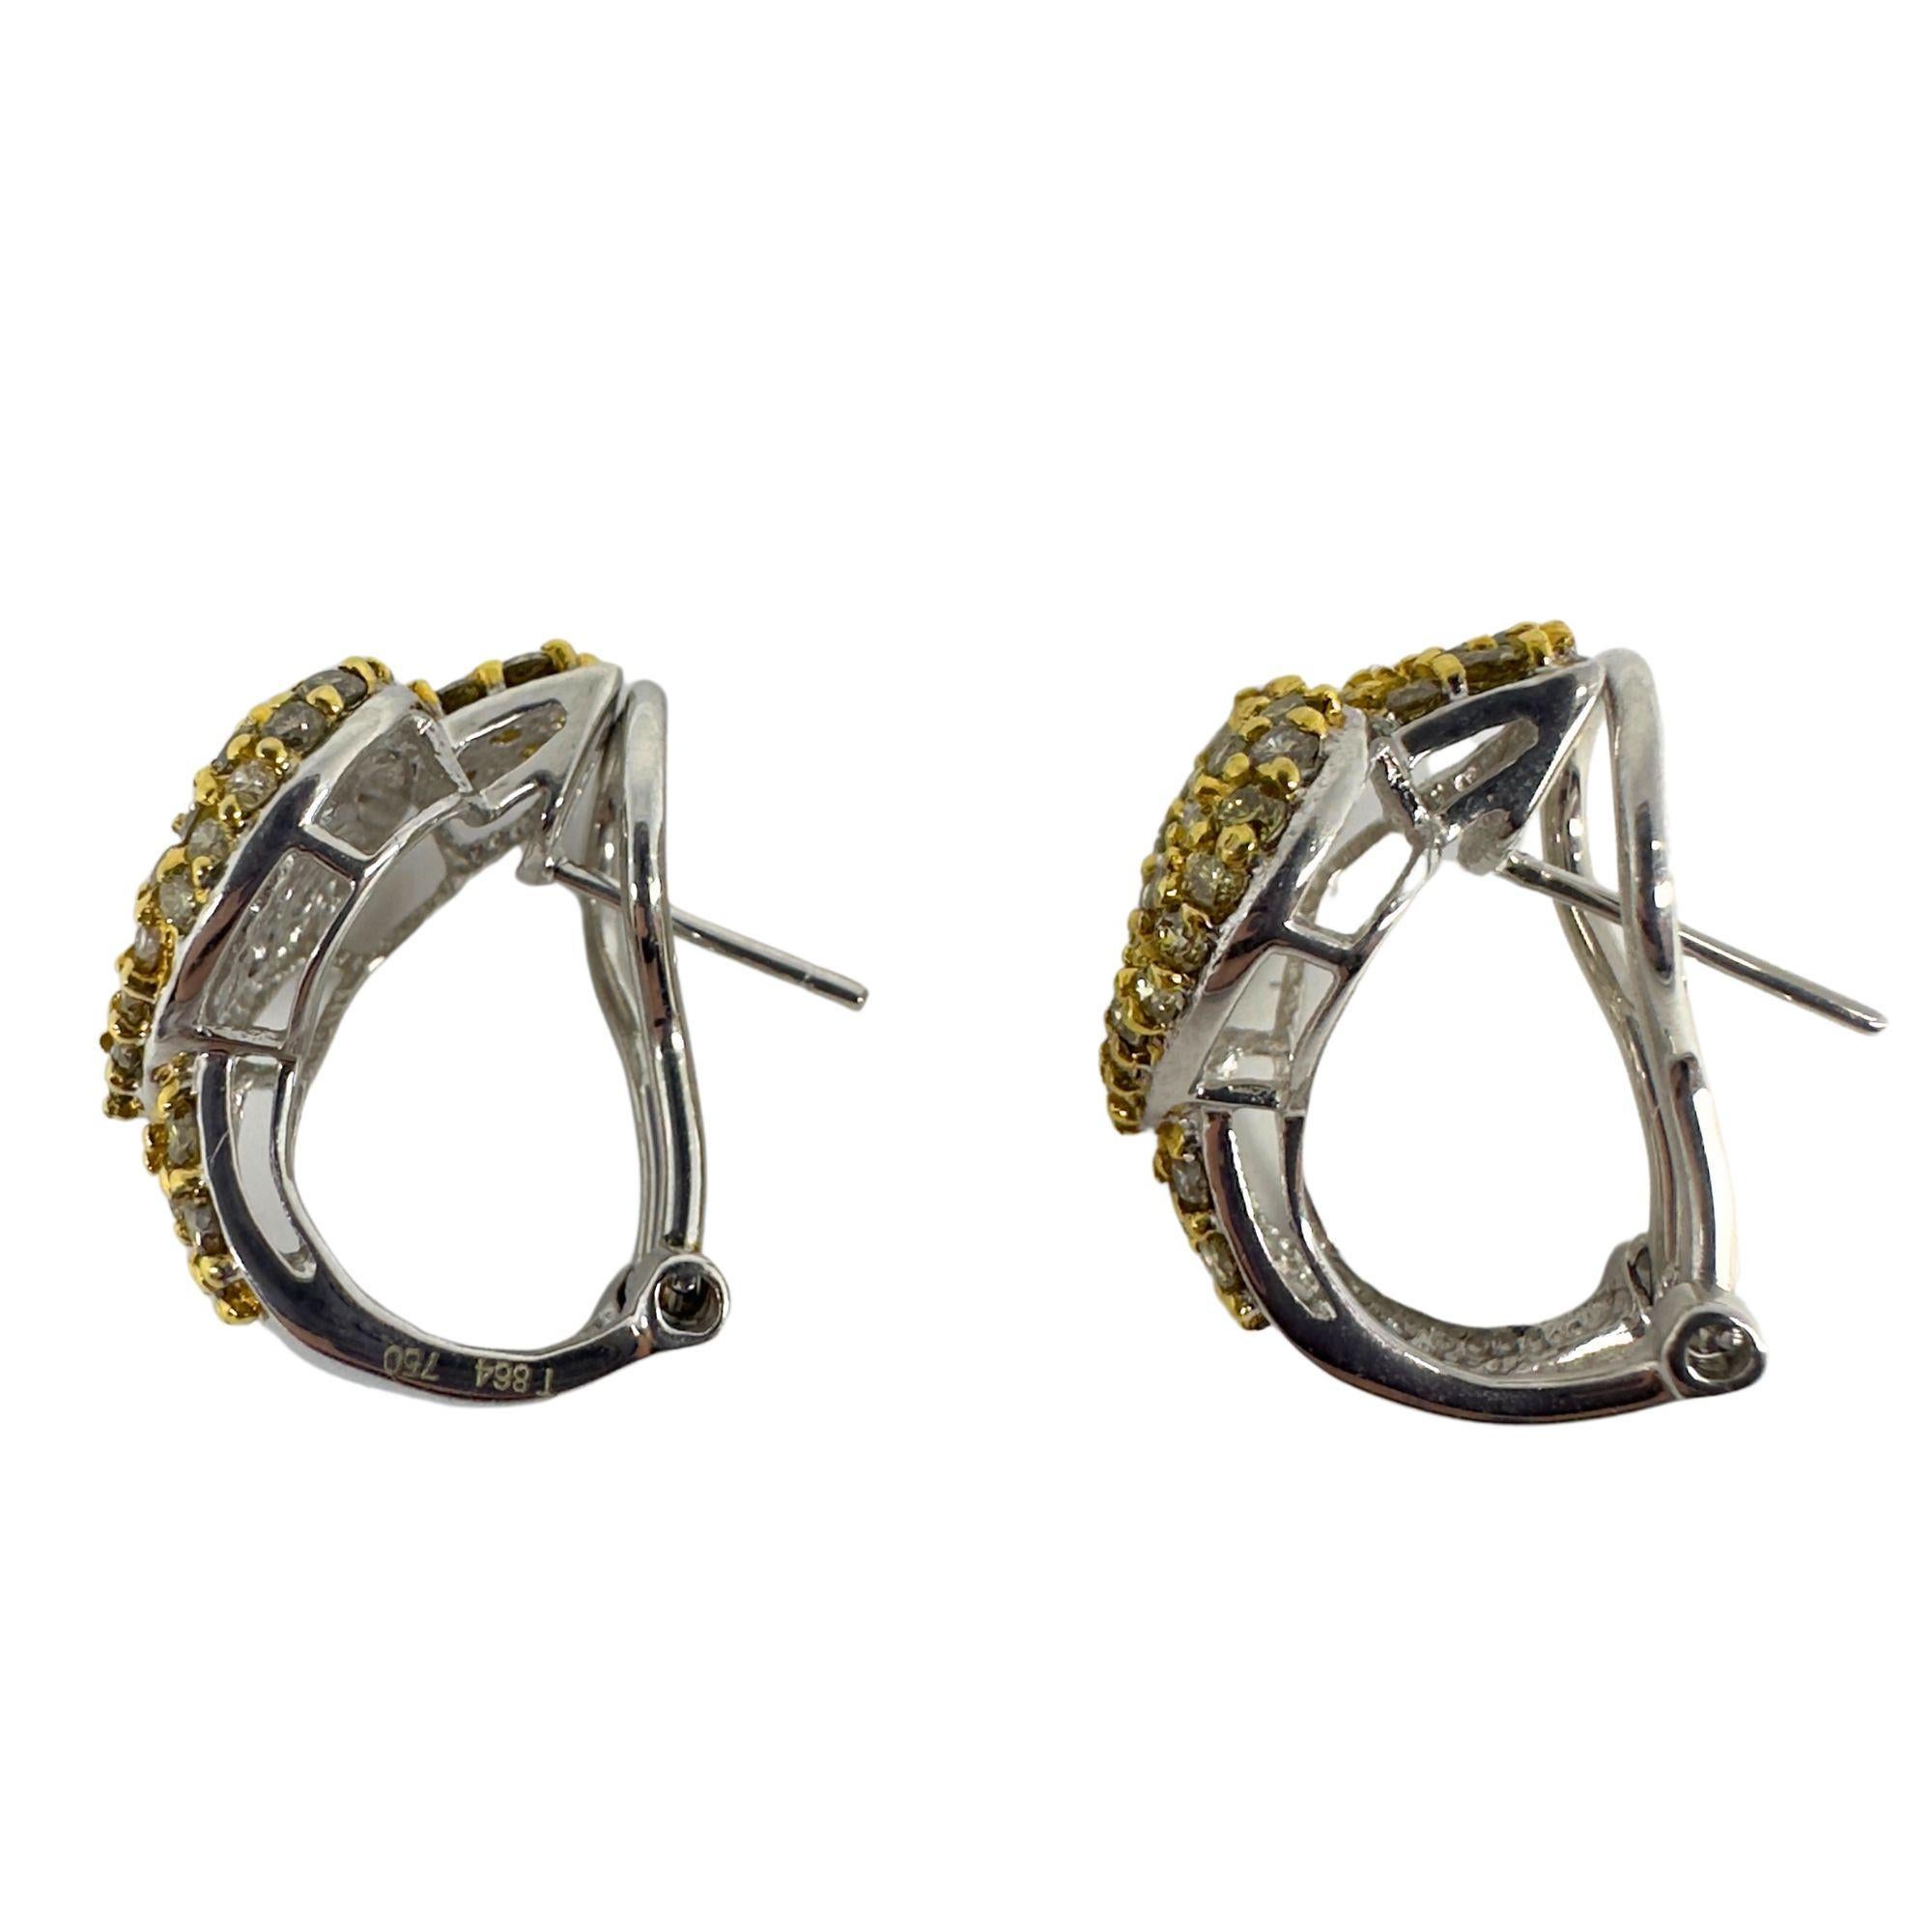 Überraschen Sie Ihre Liebste mit diesen verspielten und einzigartigen 18k White and Yellow Diamond Heart Earrings. Diese stilvollen Ohrringe sind in gutem Zustand mit leichten Gebrauchsspuren, messen 0,75 Zoll und sind mit 